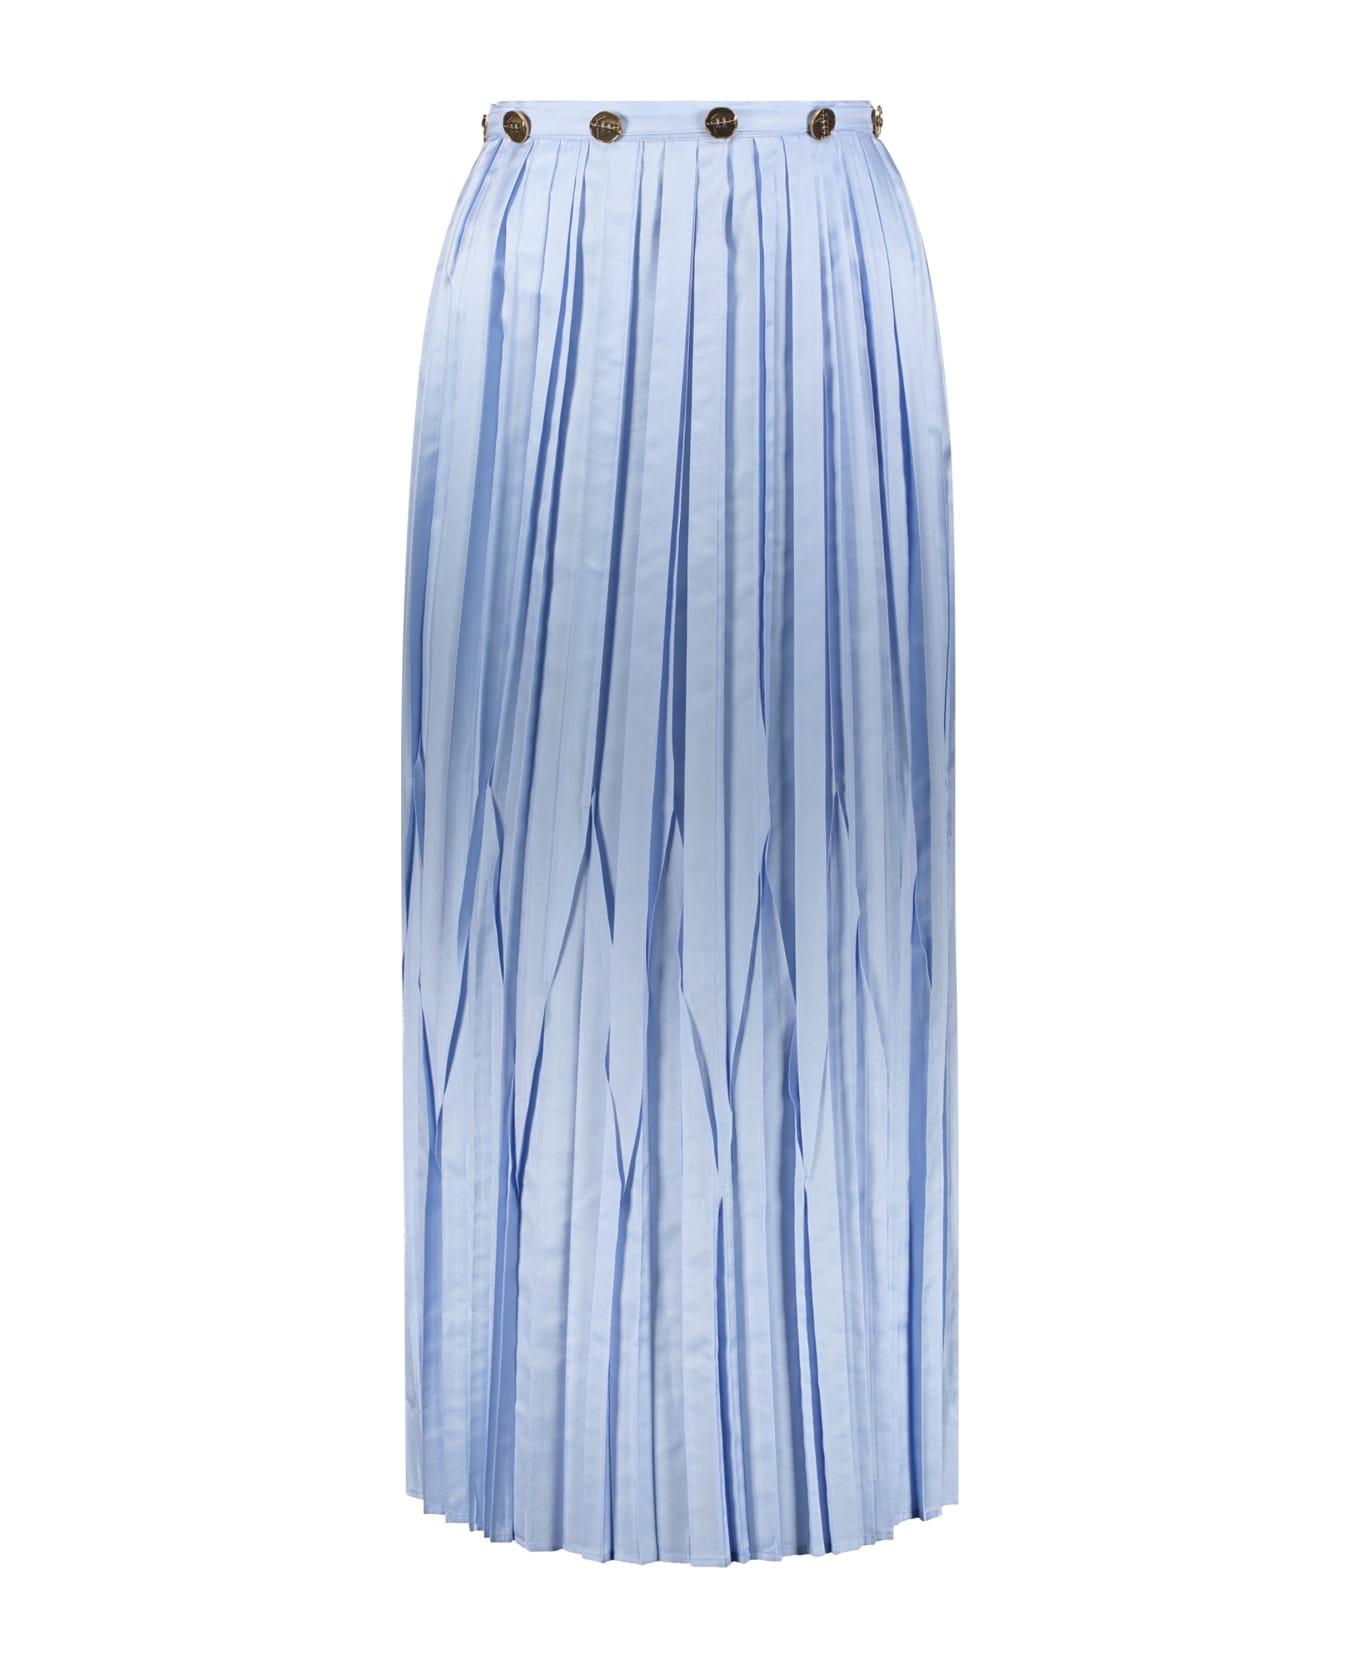 Ferragamo Pleated Skirt - Light Blue